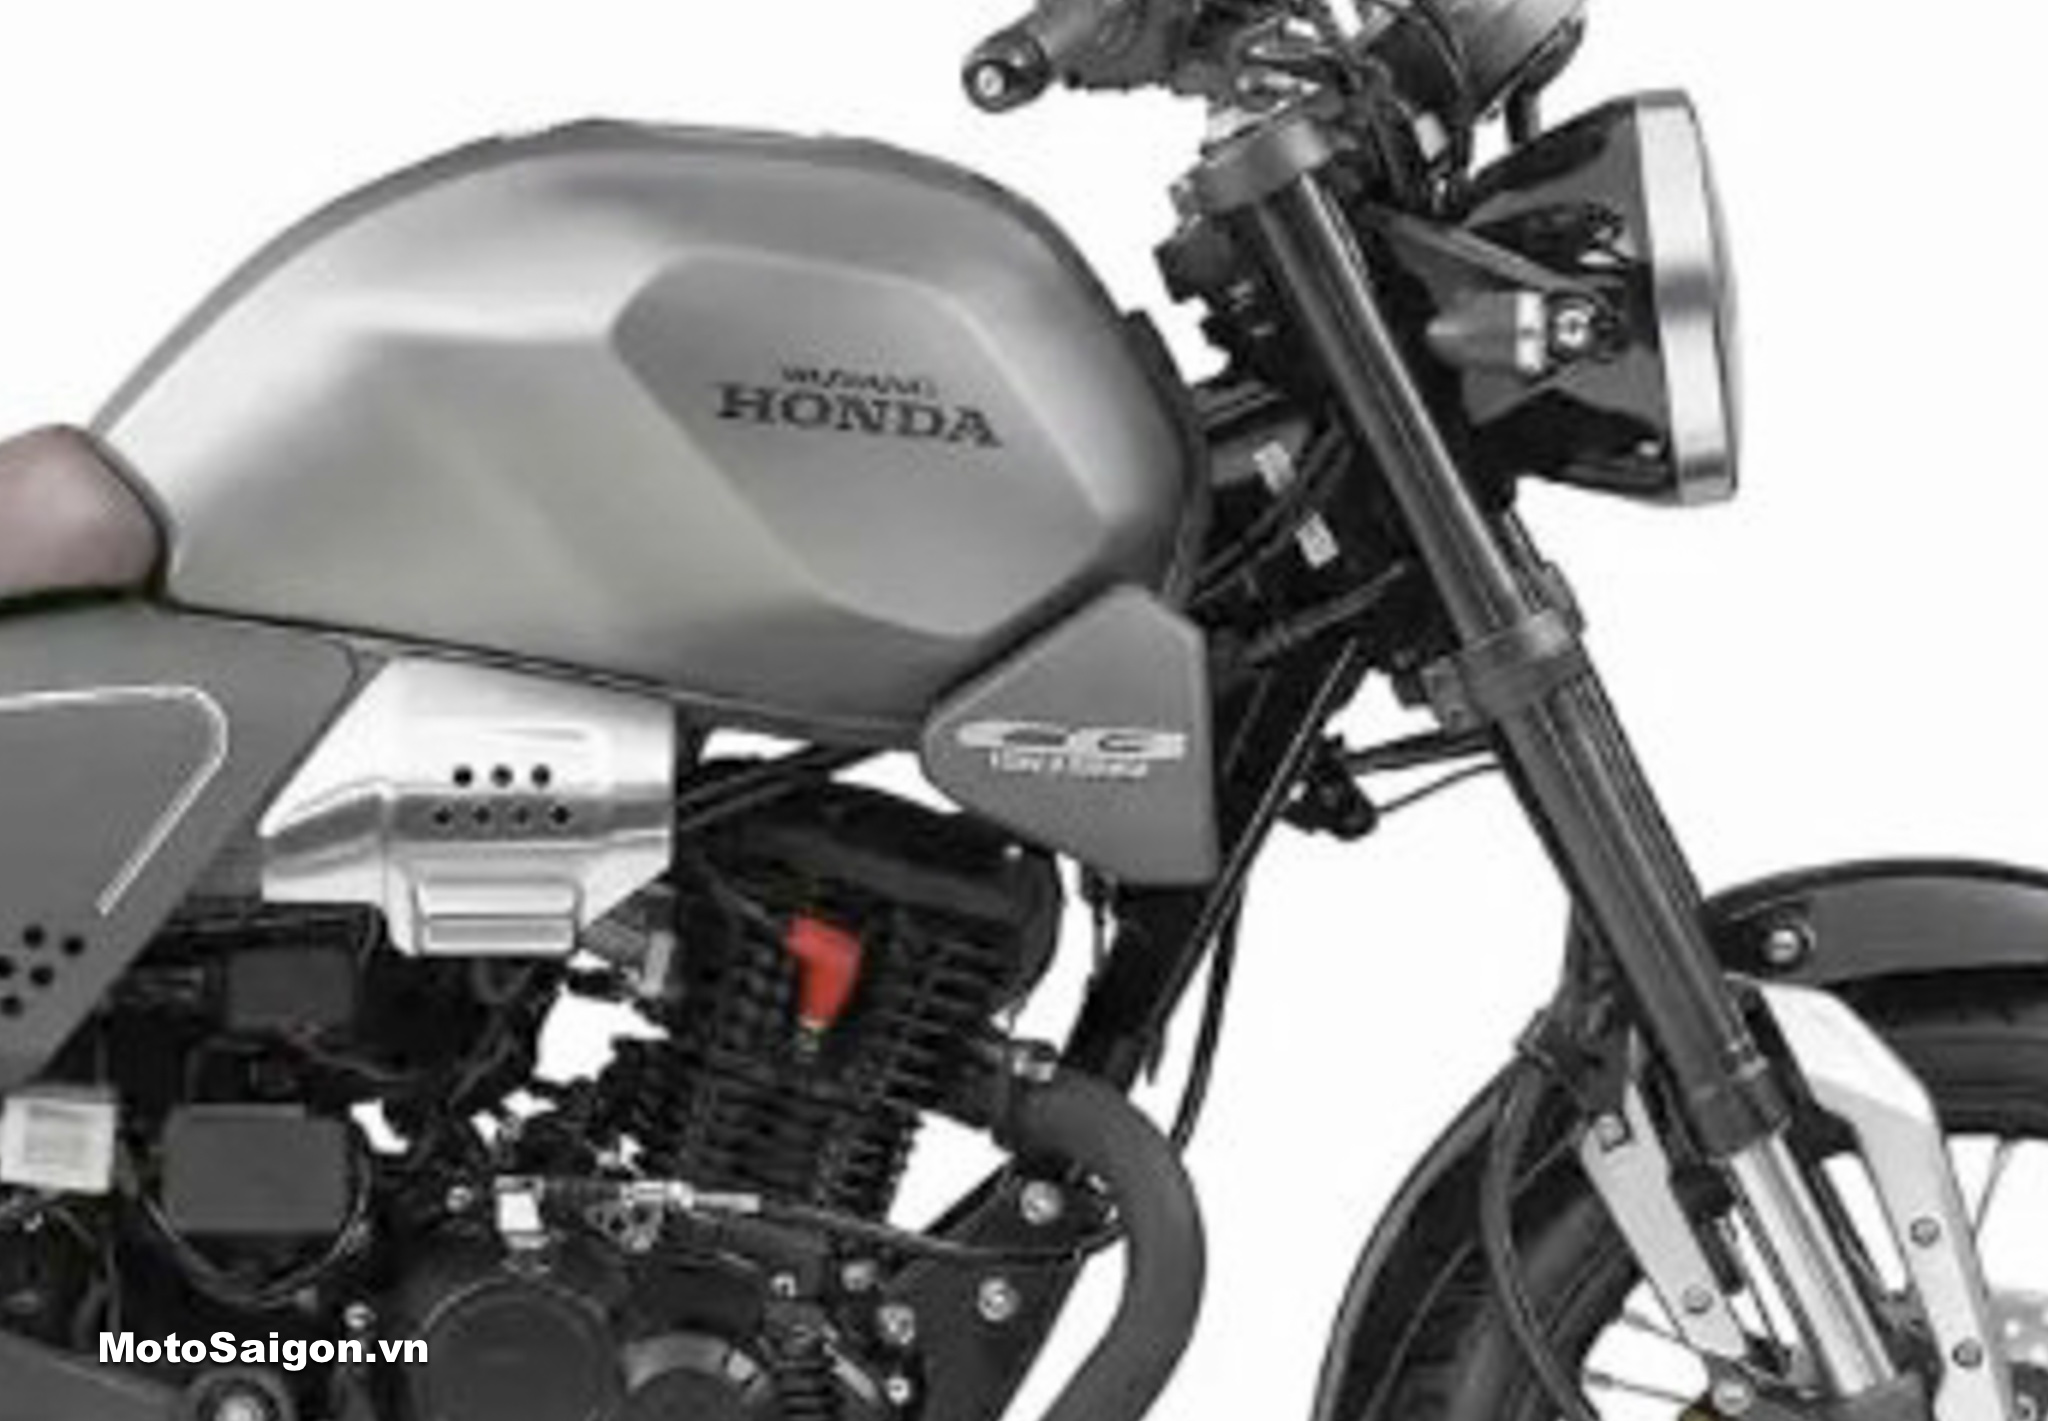 Honda CB190SS 2022 chi tiết hình ảnh giá bán thông số mới nhất